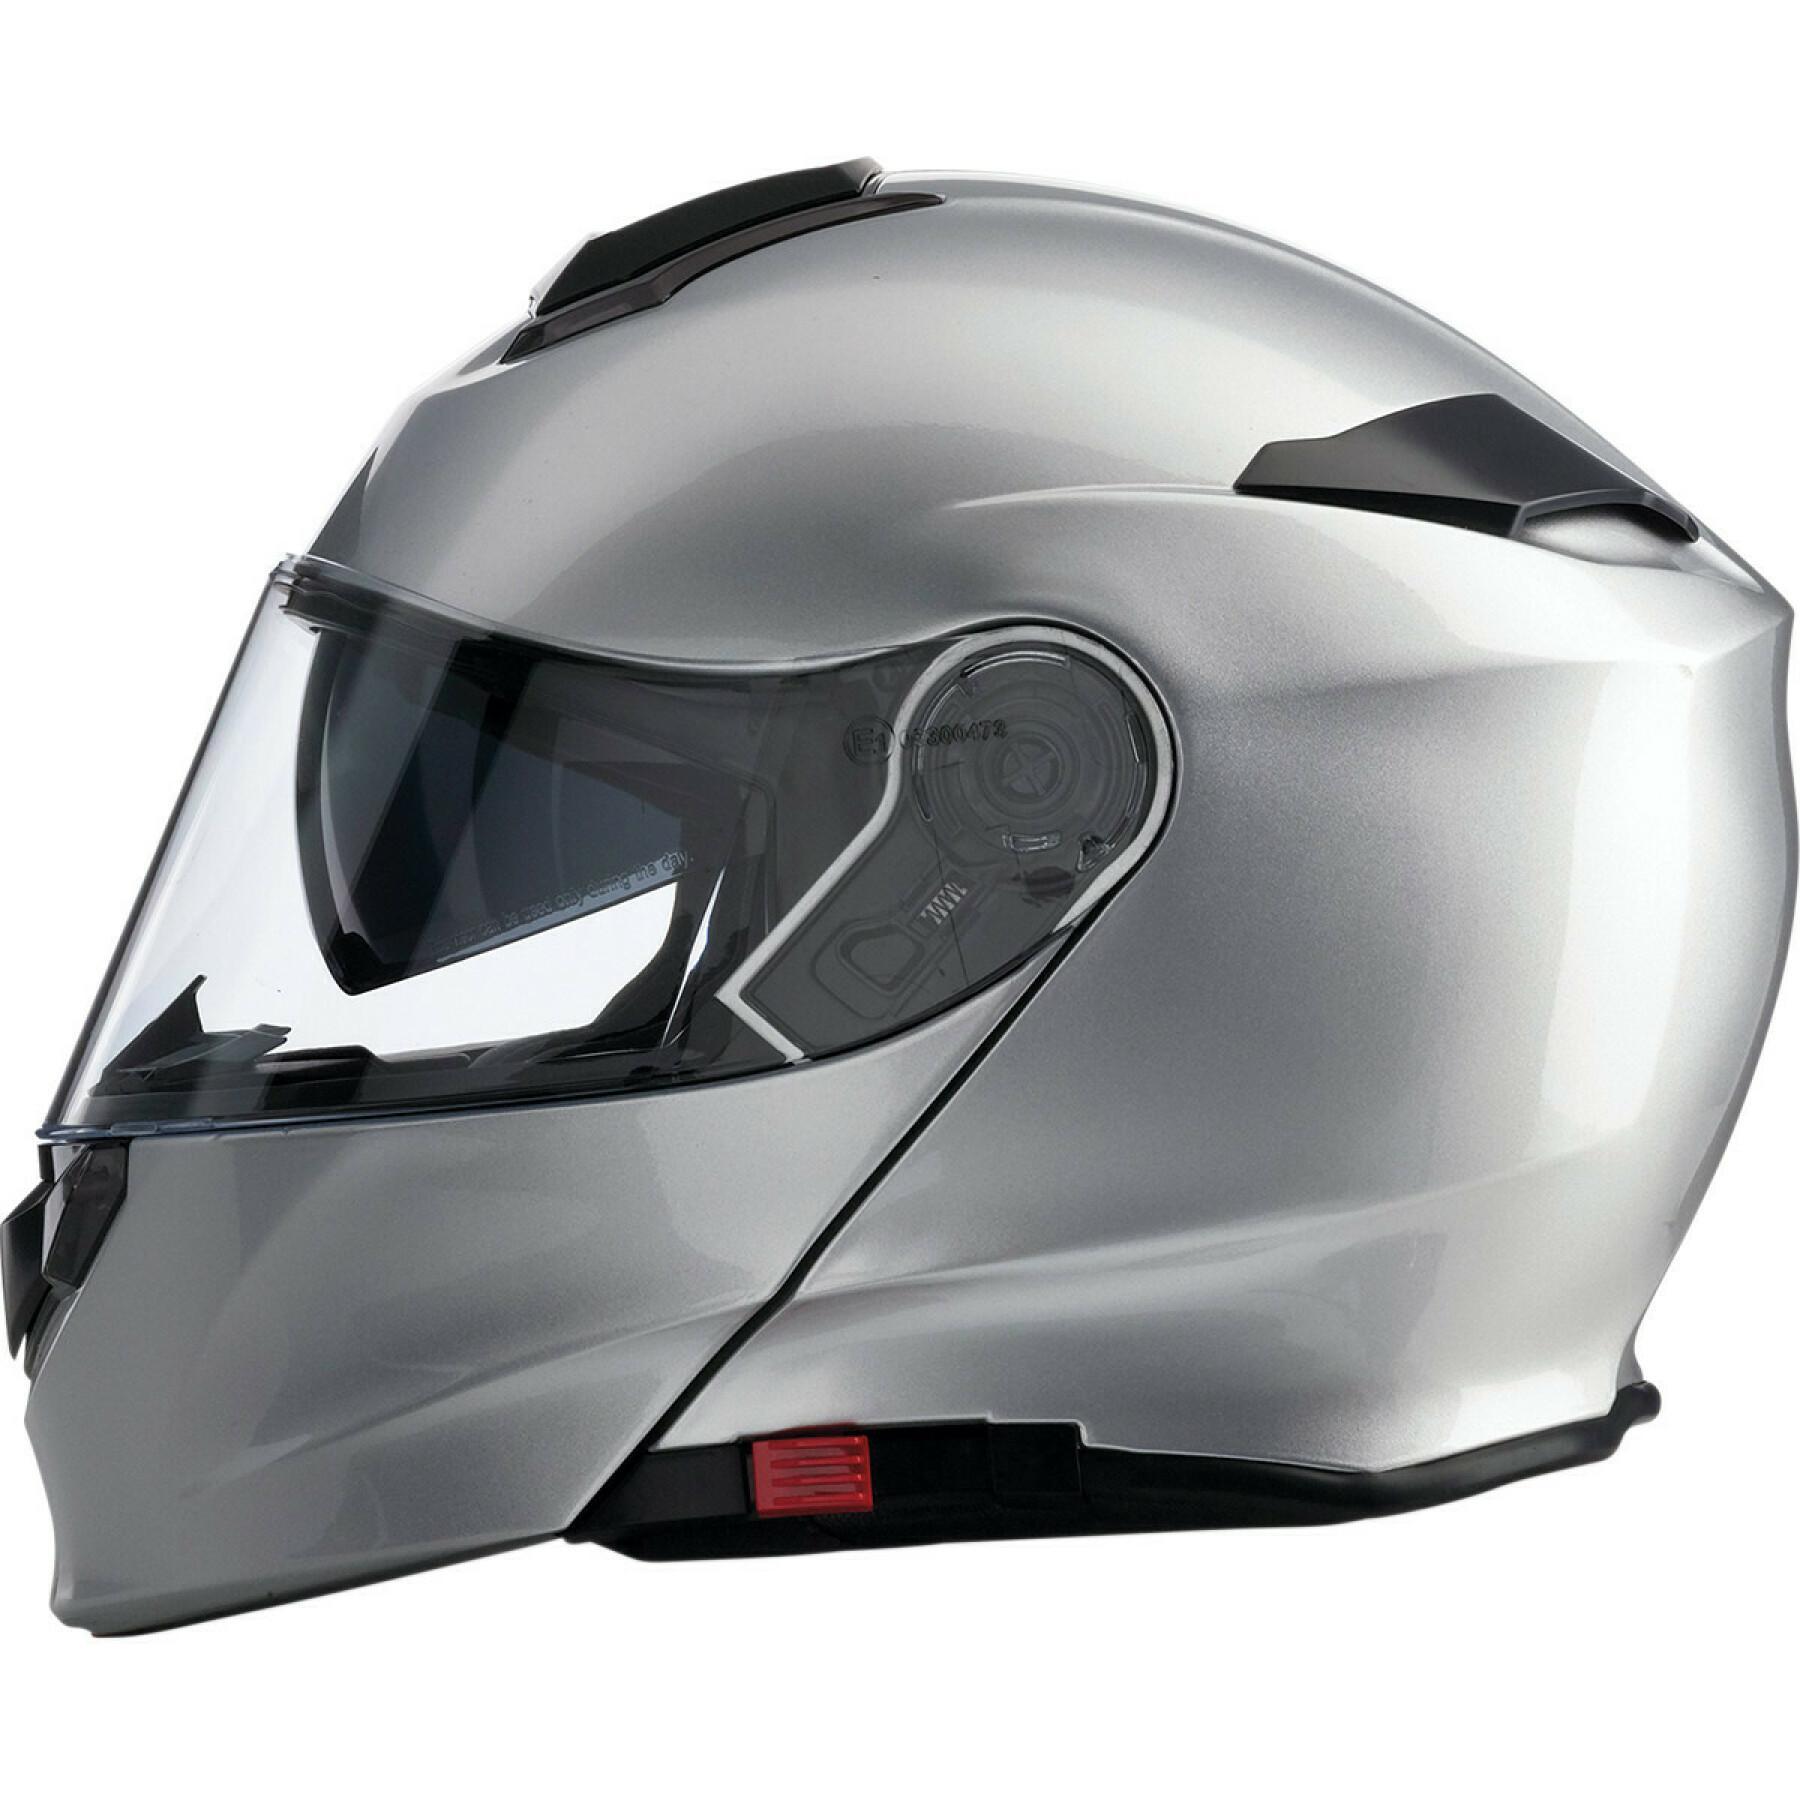 Full face motorcycle helmet Z1R solaris silver